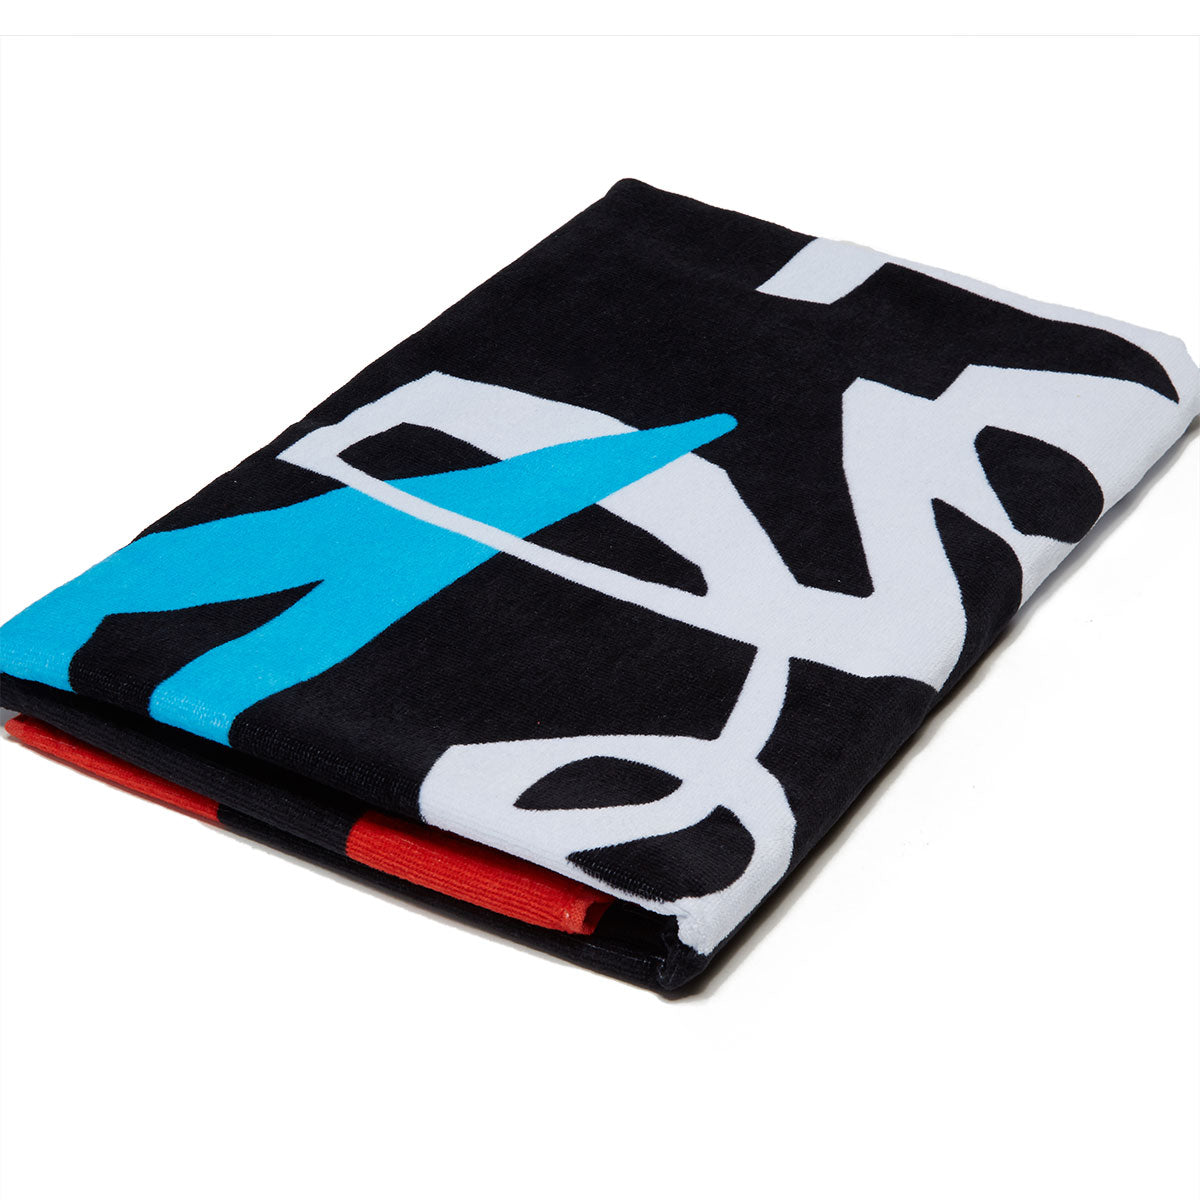 Lakai x Chocolate La Playa Towel Accessories - Black image 2